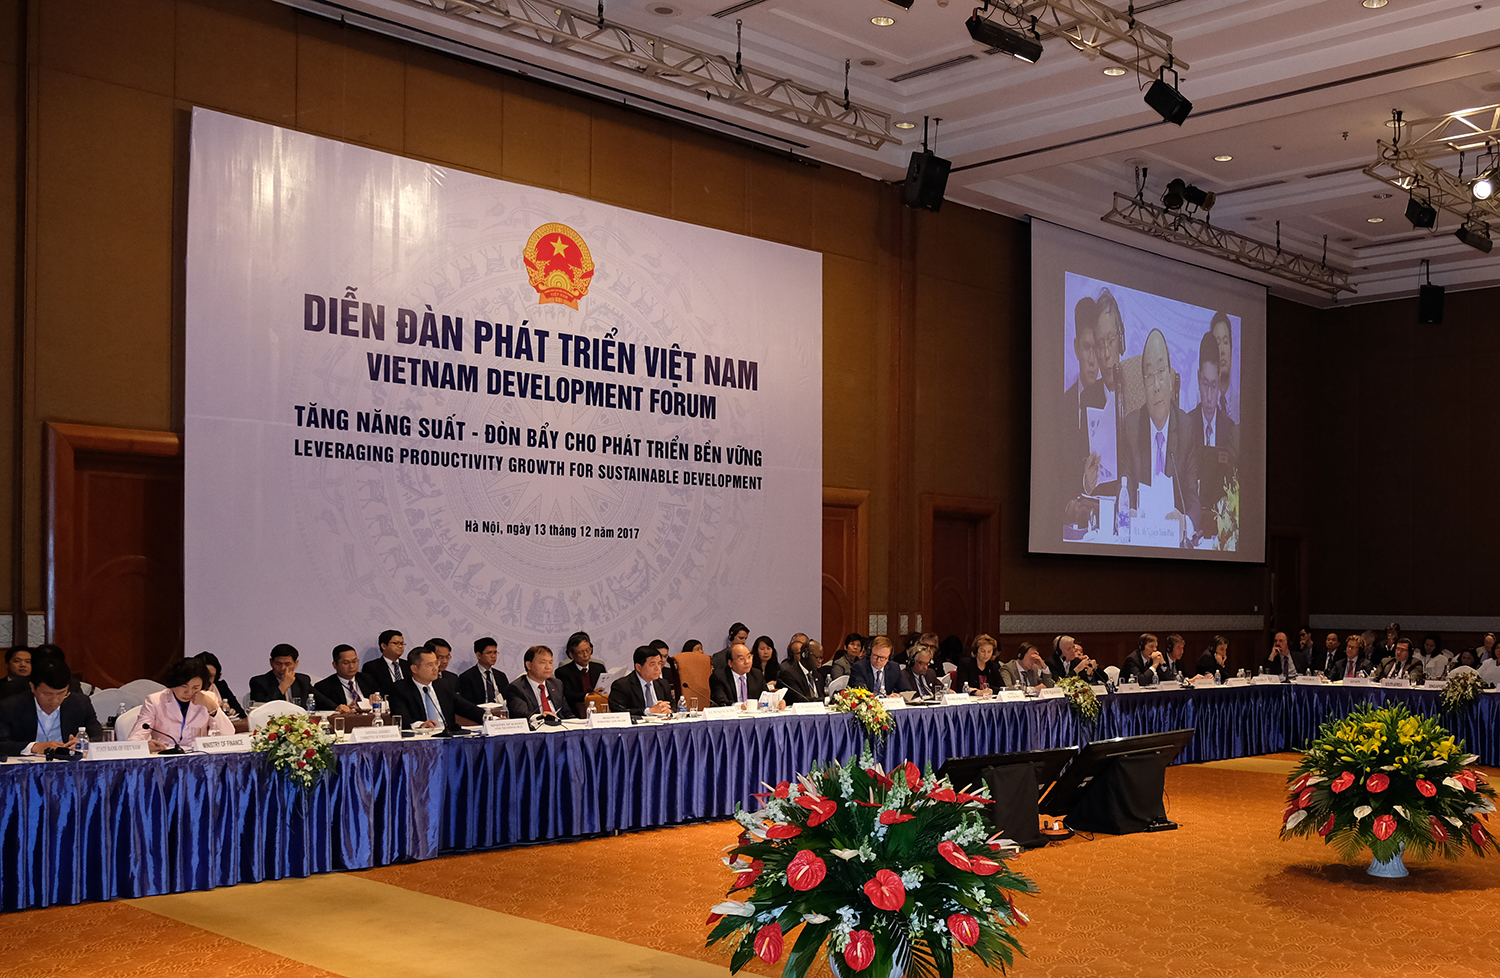 Diễn đàn Phát triển Việt Nam 2017: “Tăng năng suất – đòn bẩy cho phát triển bền vững”